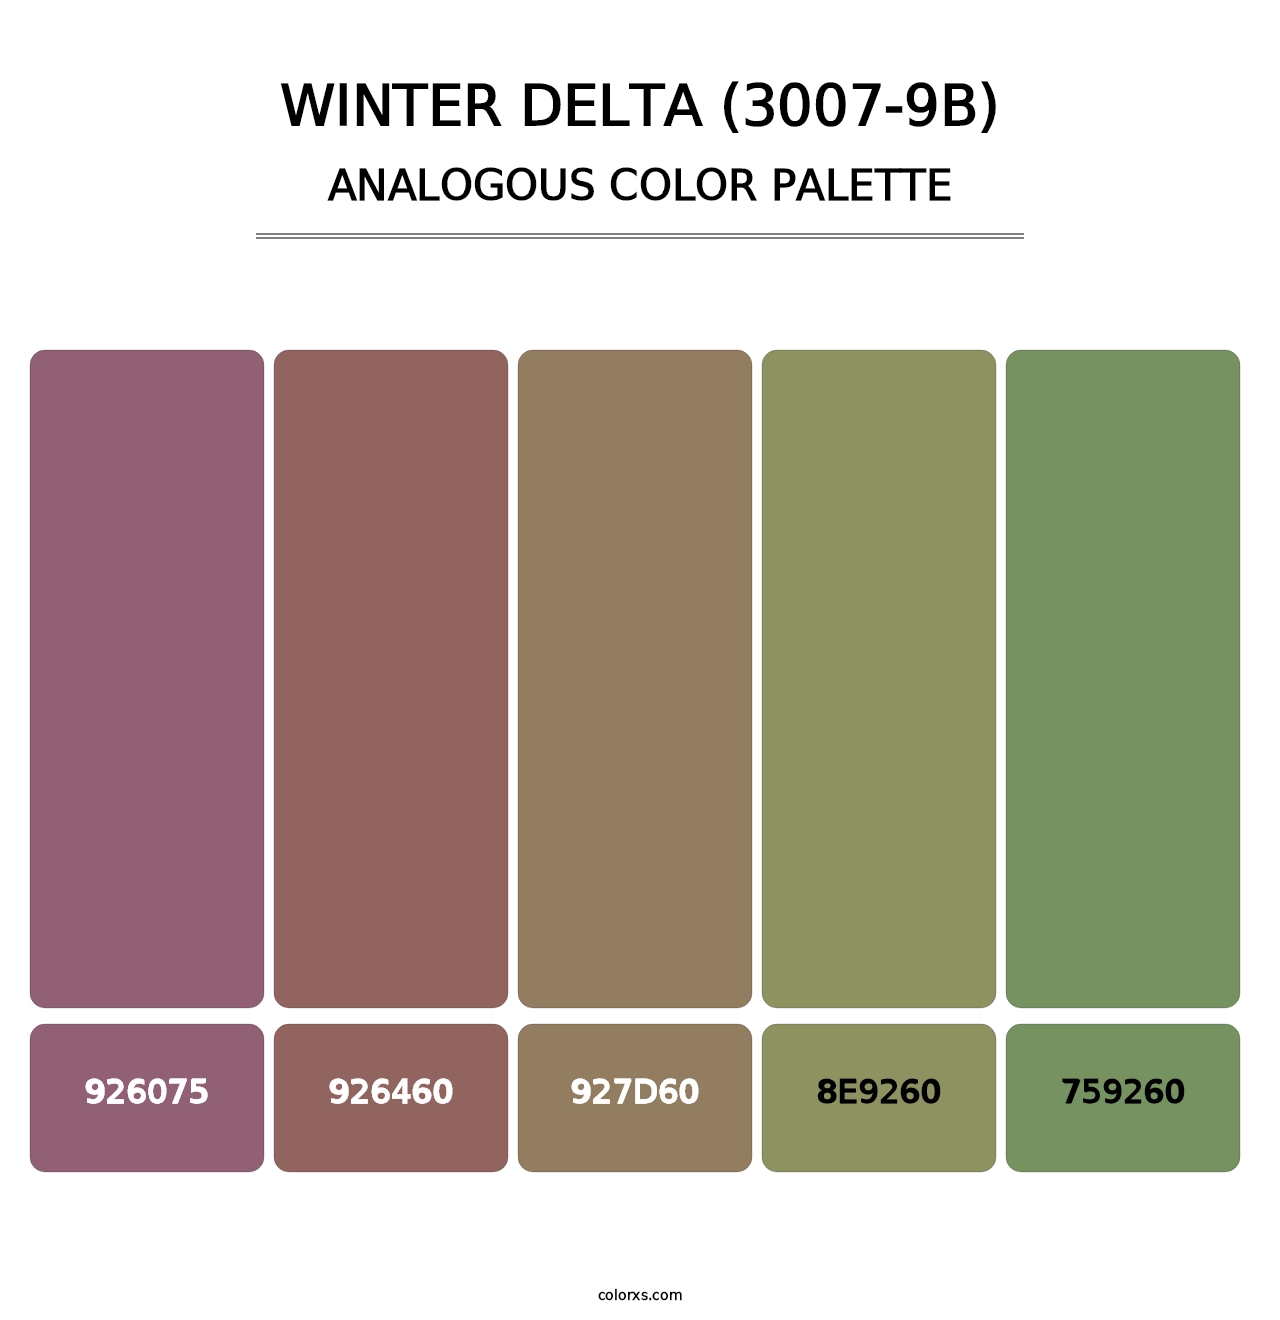 Winter Delta (3007-9B) - Analogous Color Palette